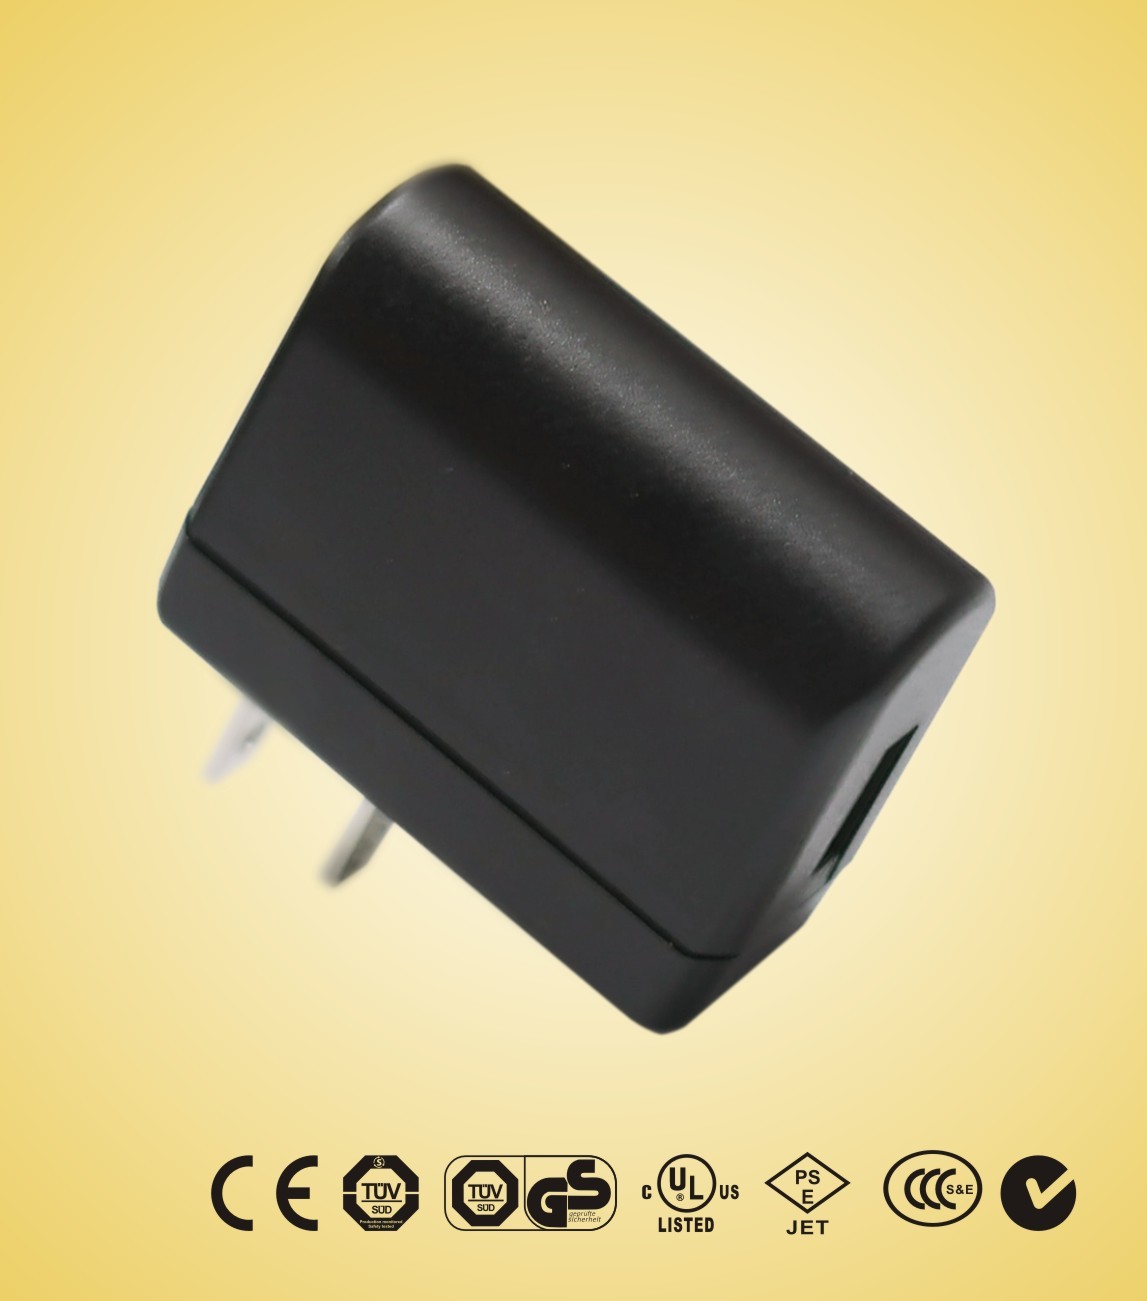 سبز منبع تغذیه 3.5W 120V AC جهانی USB آداپتور برق برای تنظیم بالای جعبه، ADSL، شارژر